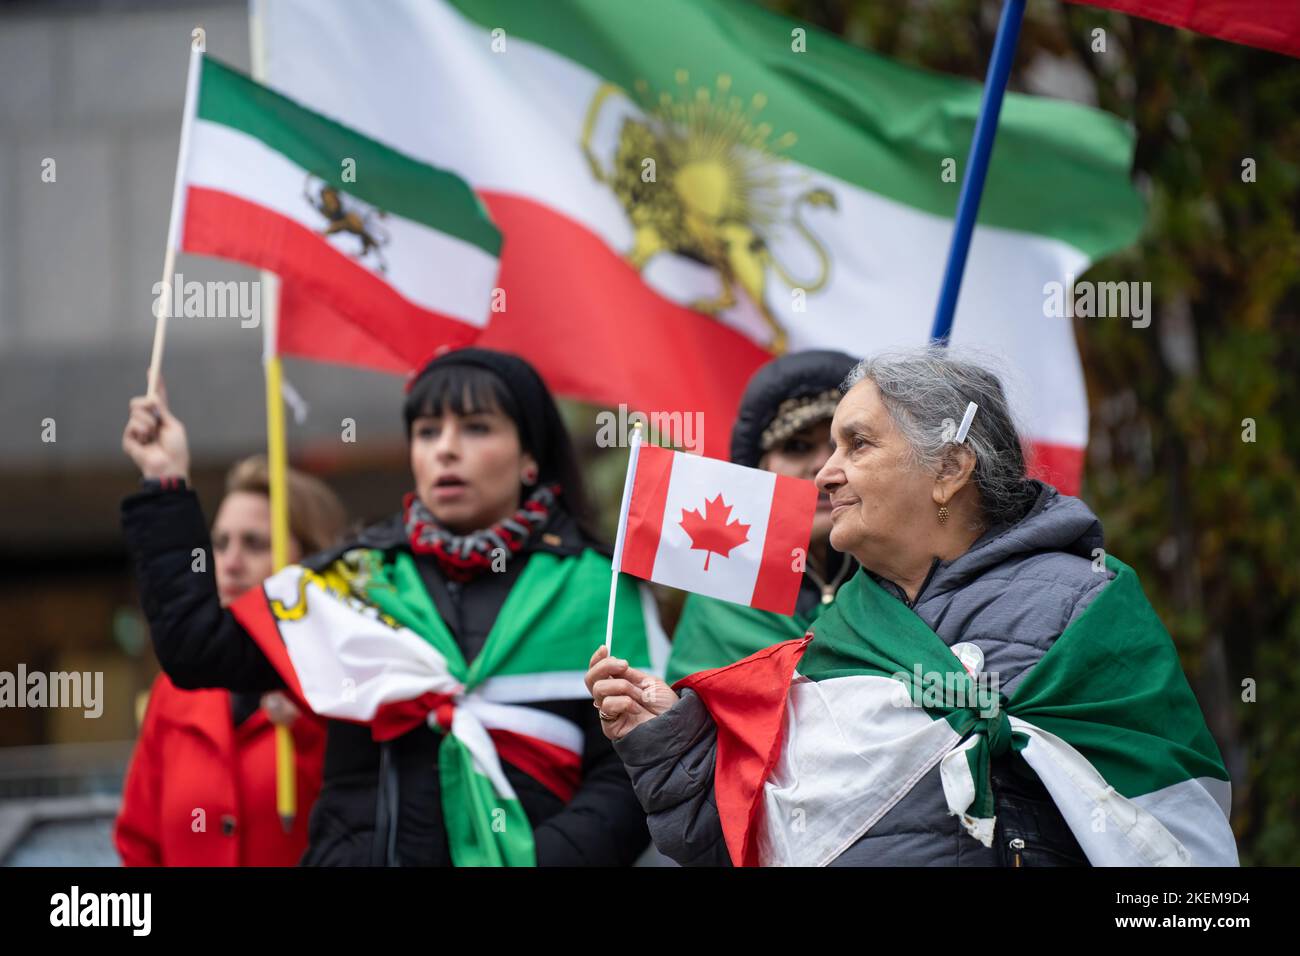 Una donna anziana, adornata da una bandiera iraniana shir-o-Khorshid, detiene una bandiera canadese durante un raduno di Toronto in solidarietà con il popolo iraniano. Foto Stock